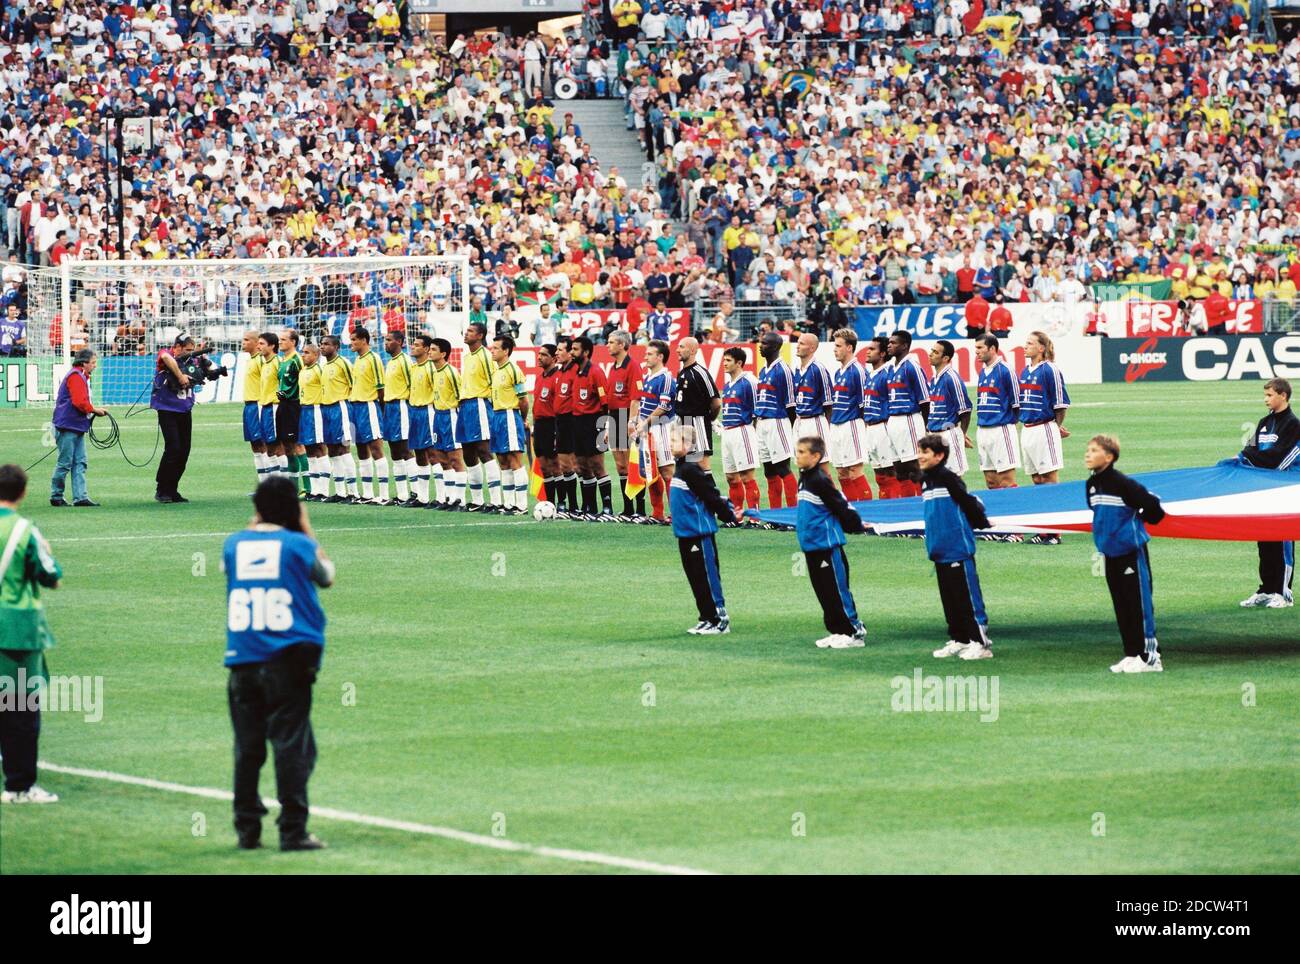 L'équipe brésilienne et française écoutent les hymnes avant le match final de la coupe du monde de football de la FIFA France contre Brésil au stade de France à Saint-Denis, près de Paris, France, le 12 juillet 1998. La France a gagné 3-0. Photo de Lionel Hahn/ABACAPRESS.COM Banque D'Images